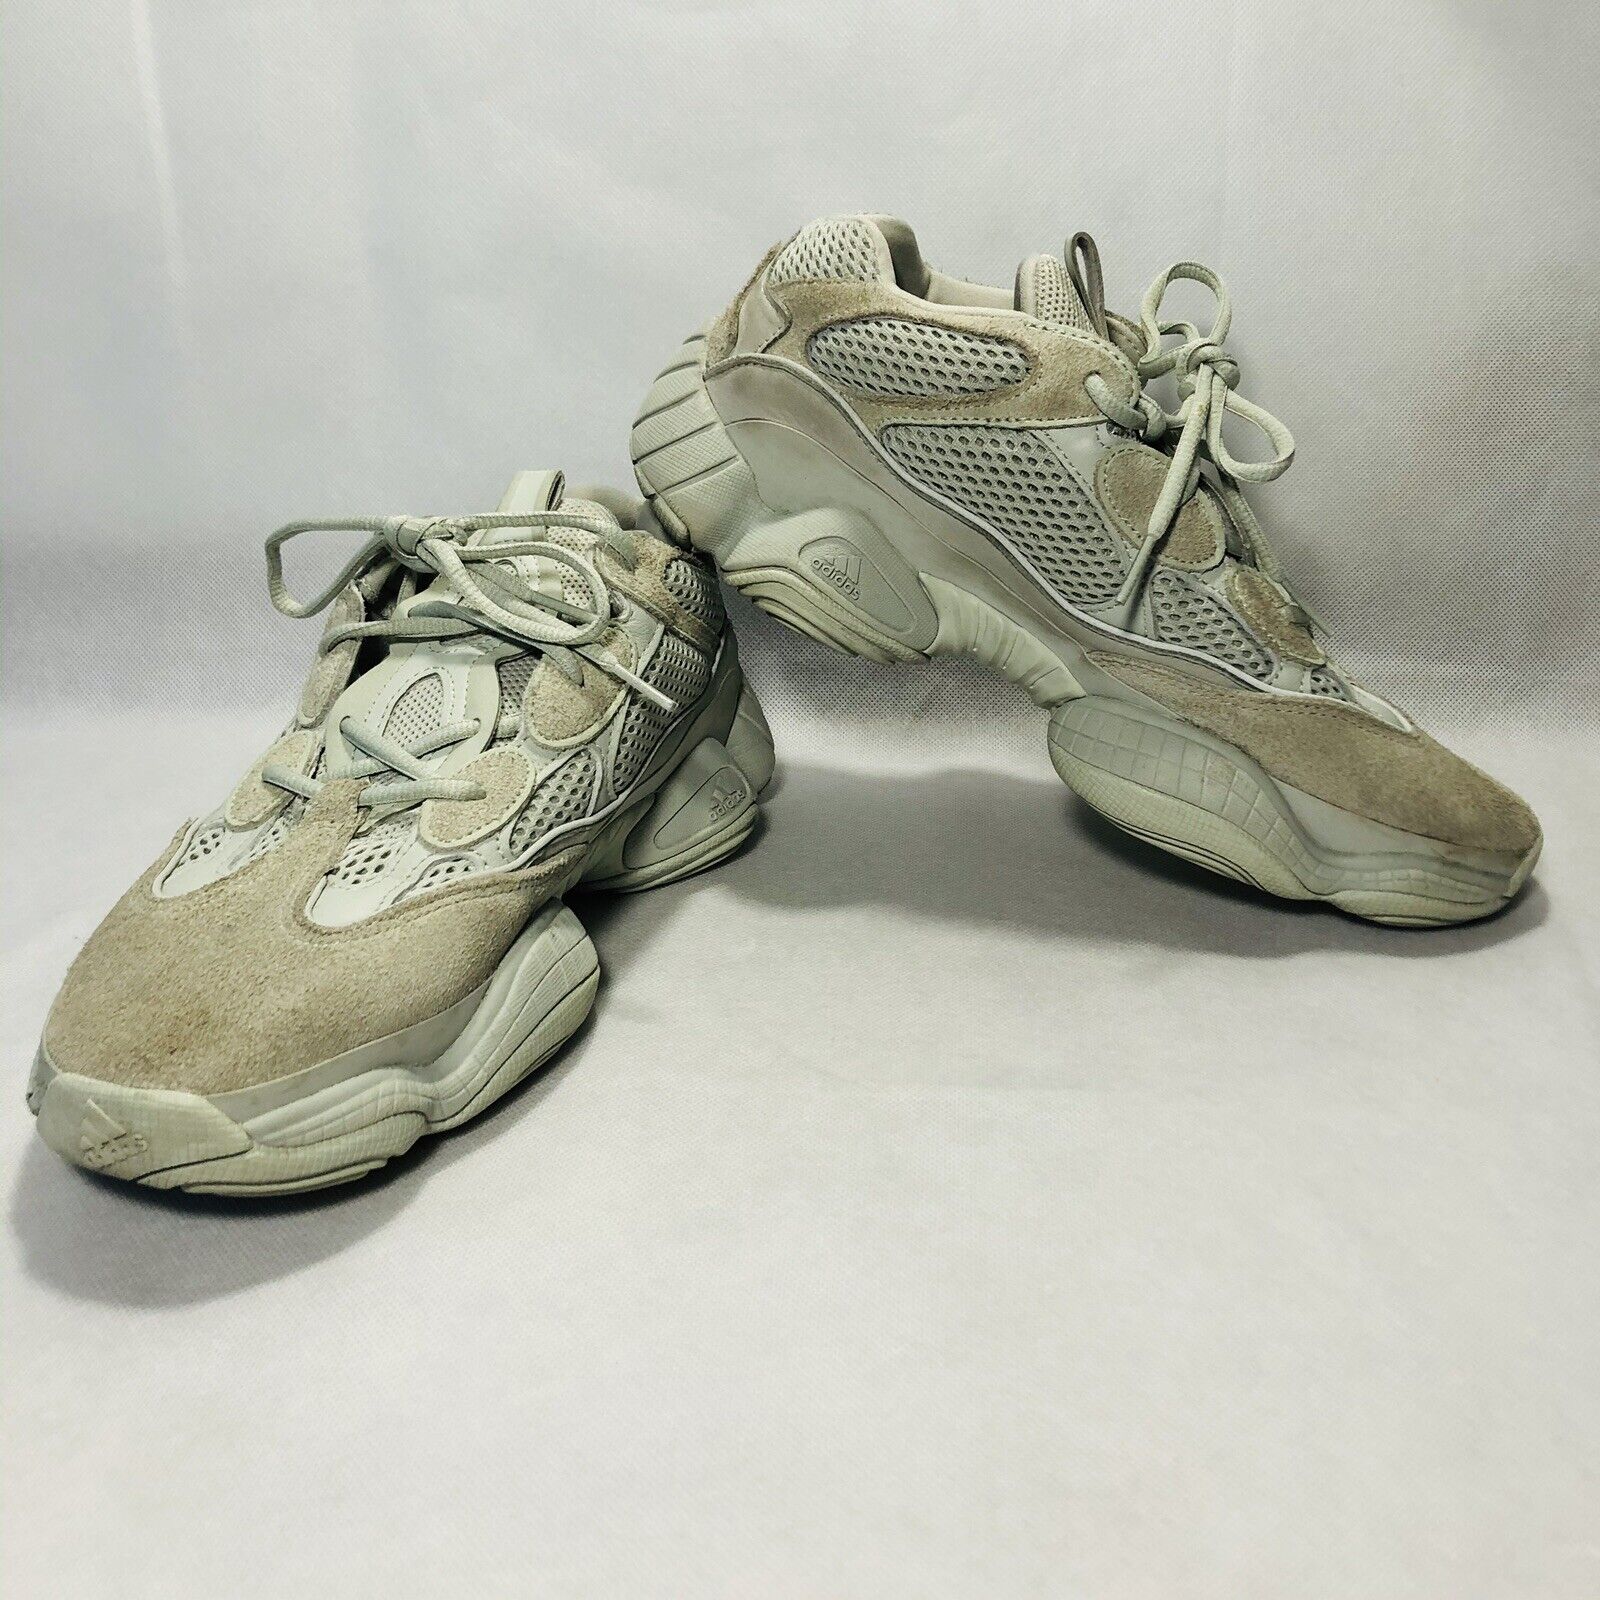 Adidas Yeezy 500 Blush Ortholite Leather Running Shoe Size :9.5 | eBay